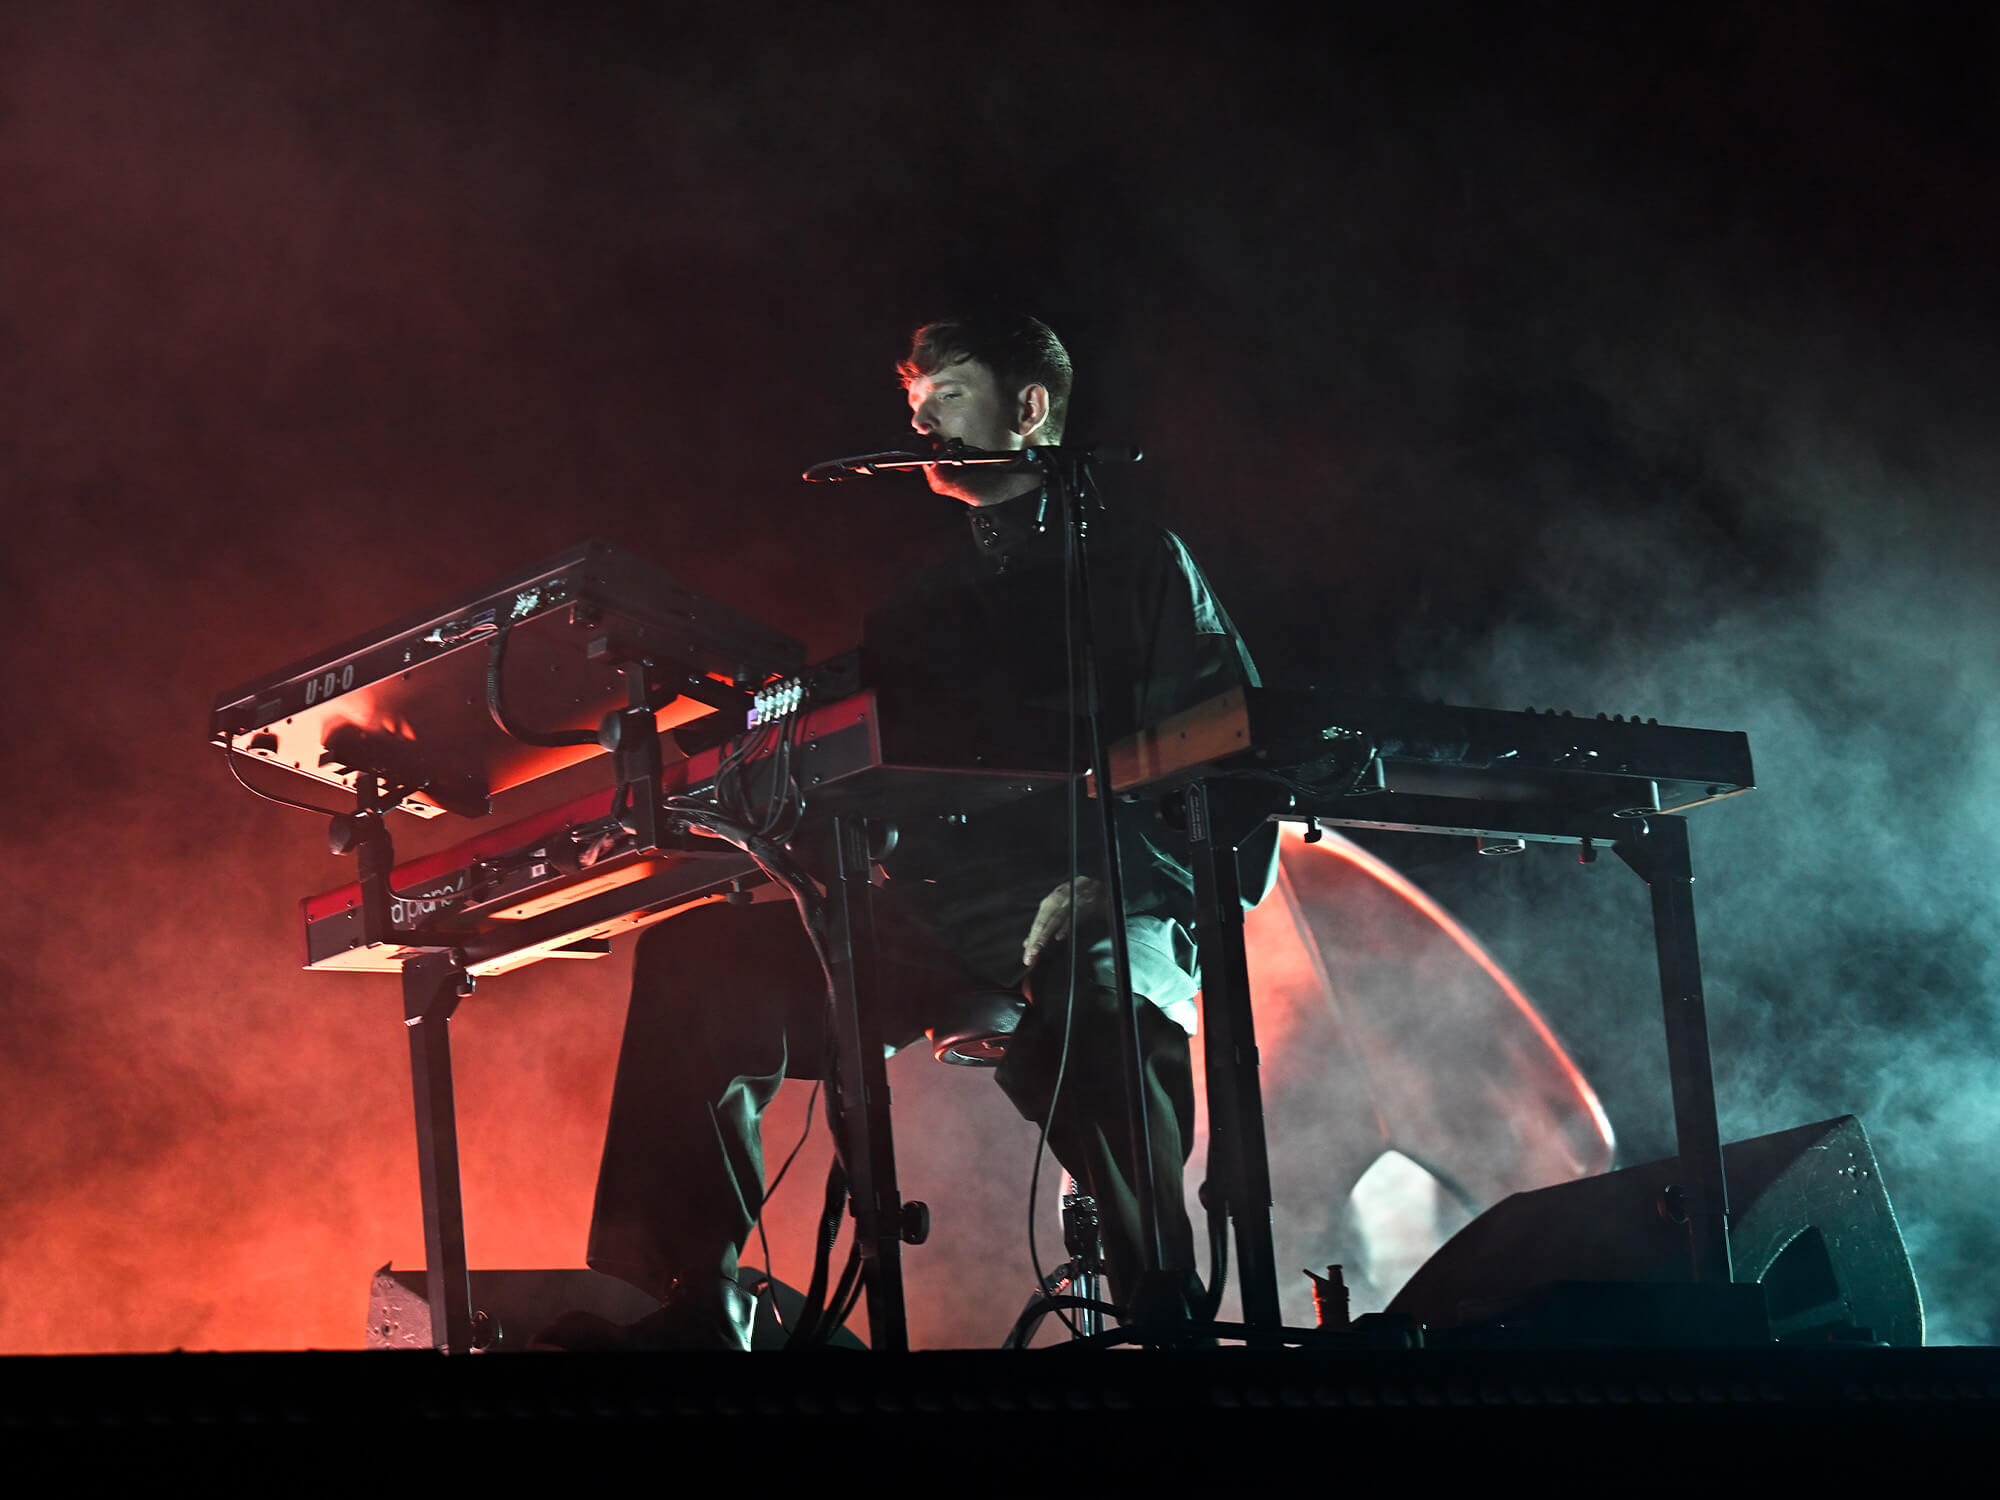 James Blake playing a keyboard on stage